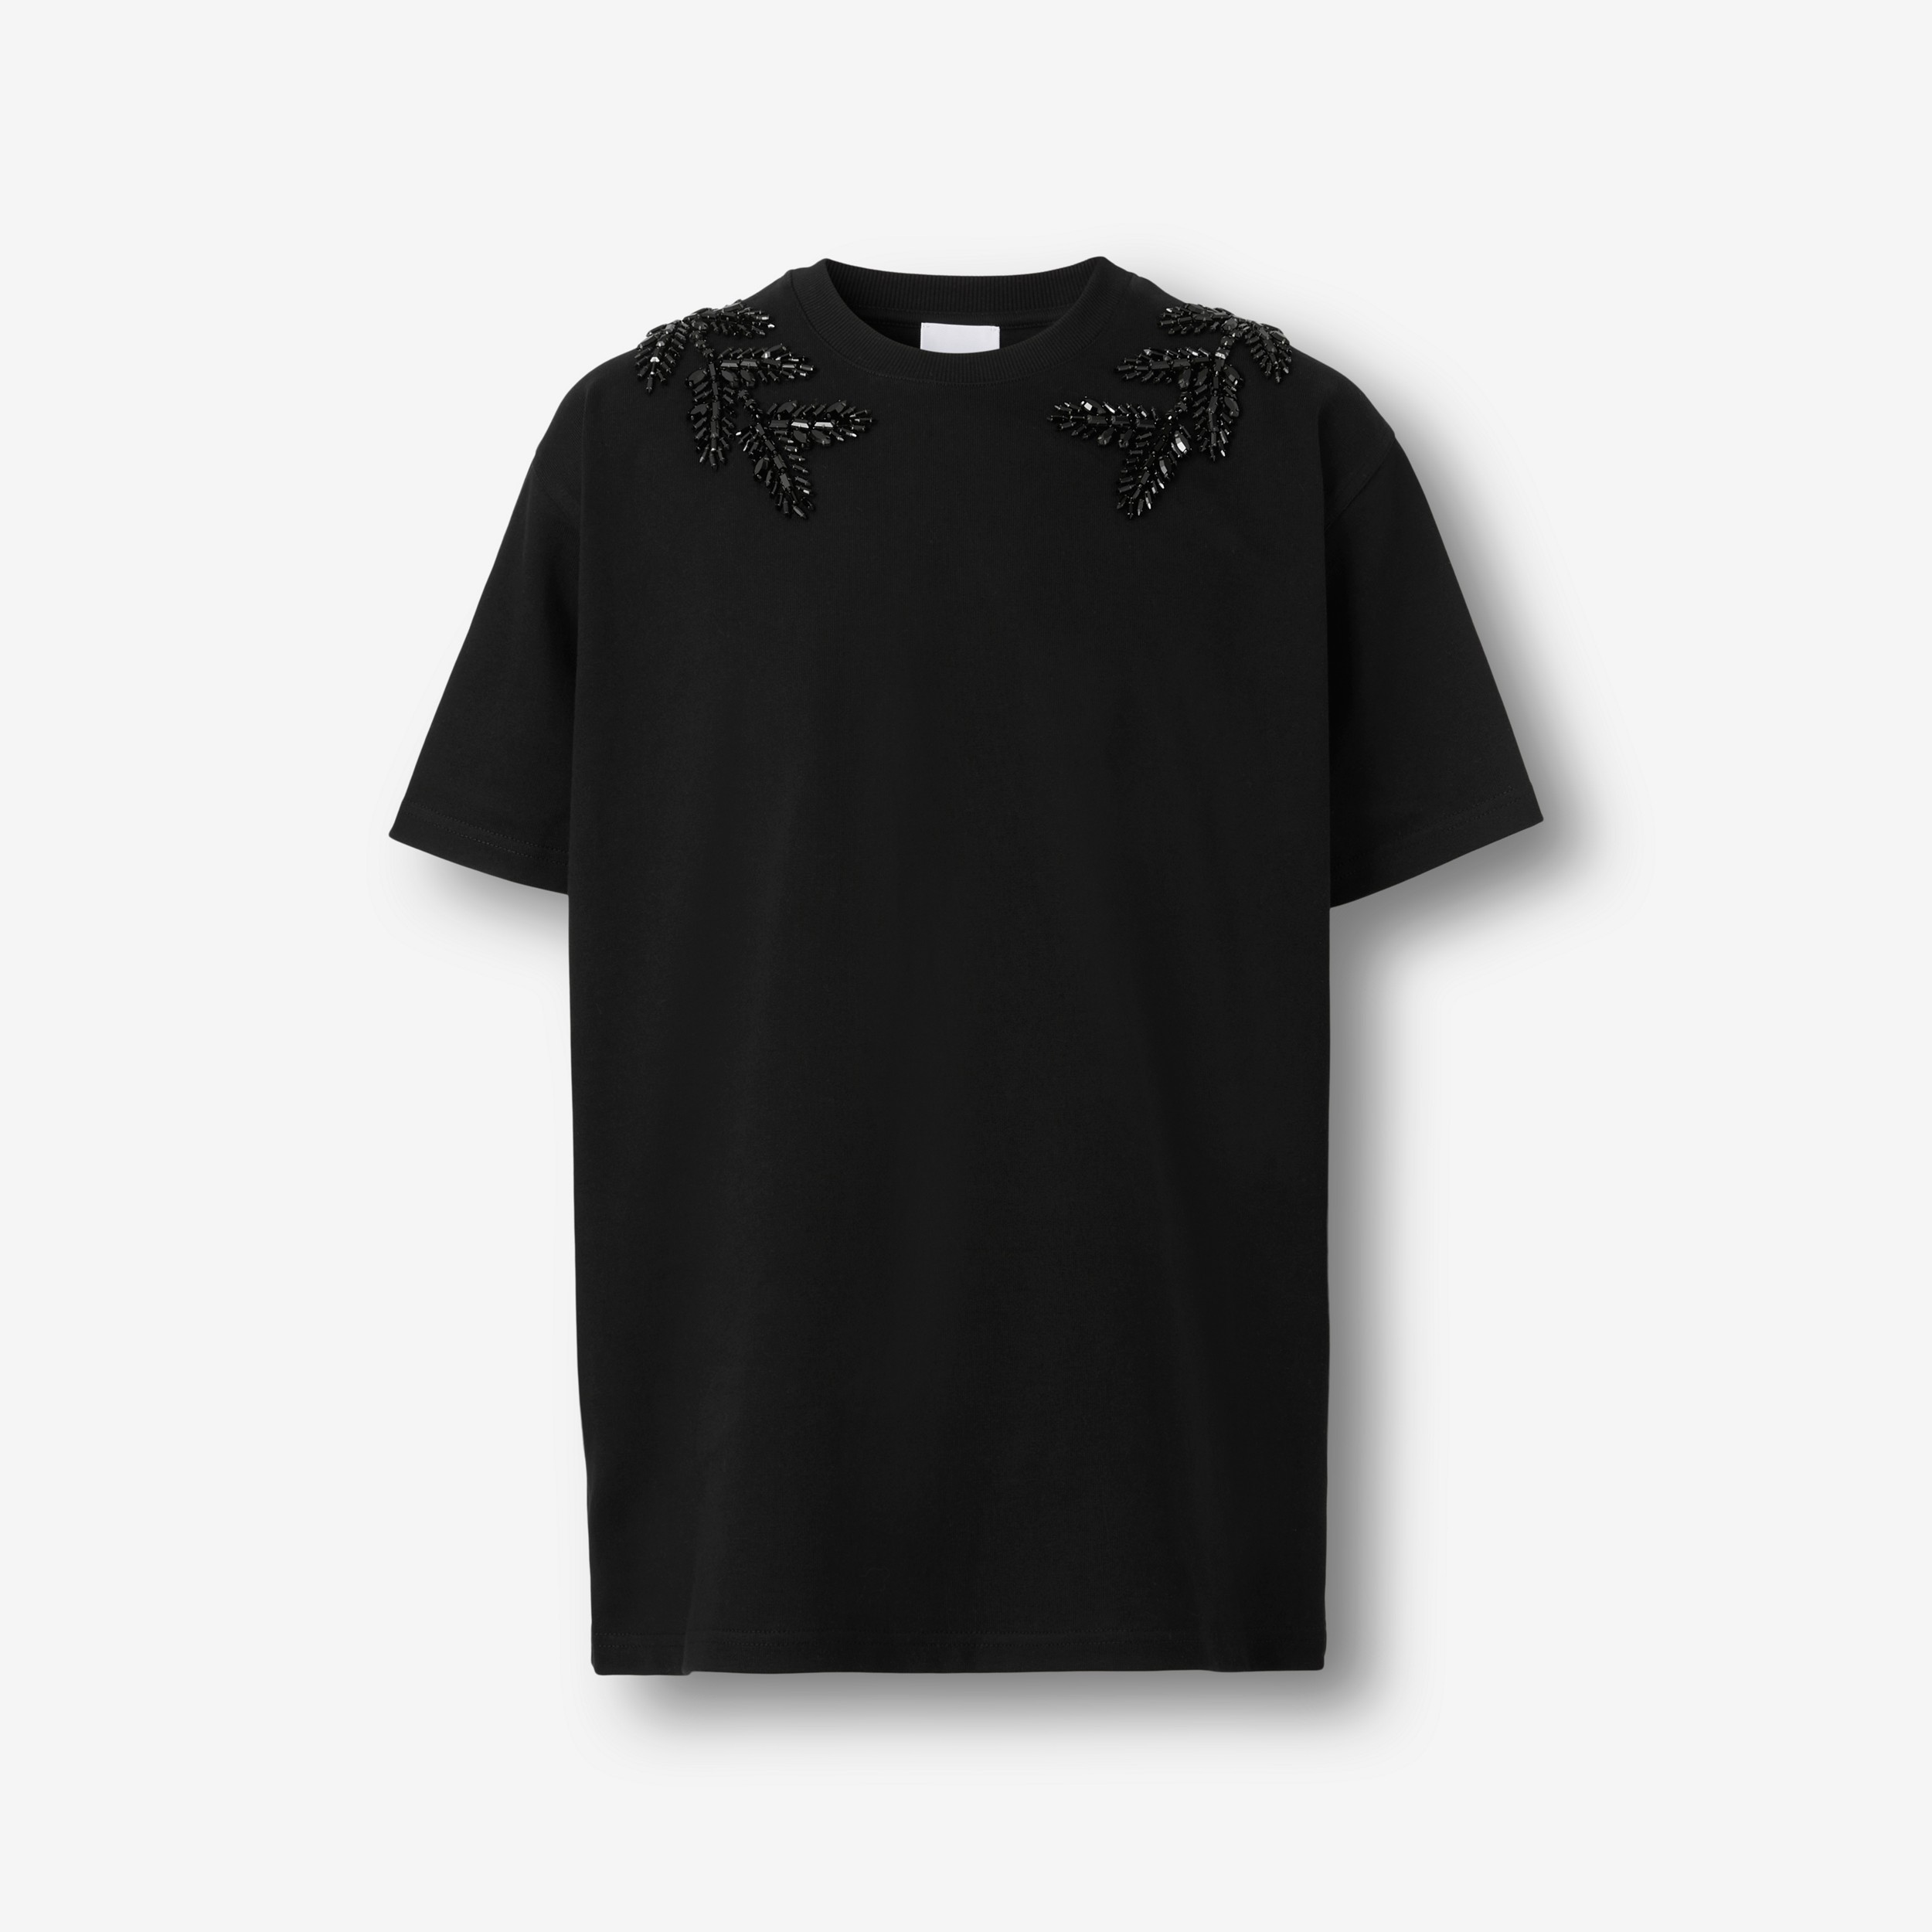 T-shirt in cotone con stemma con foglie di quercia in cristalli (Nero) - Uomo | Sito ufficiale Burberry® - 1